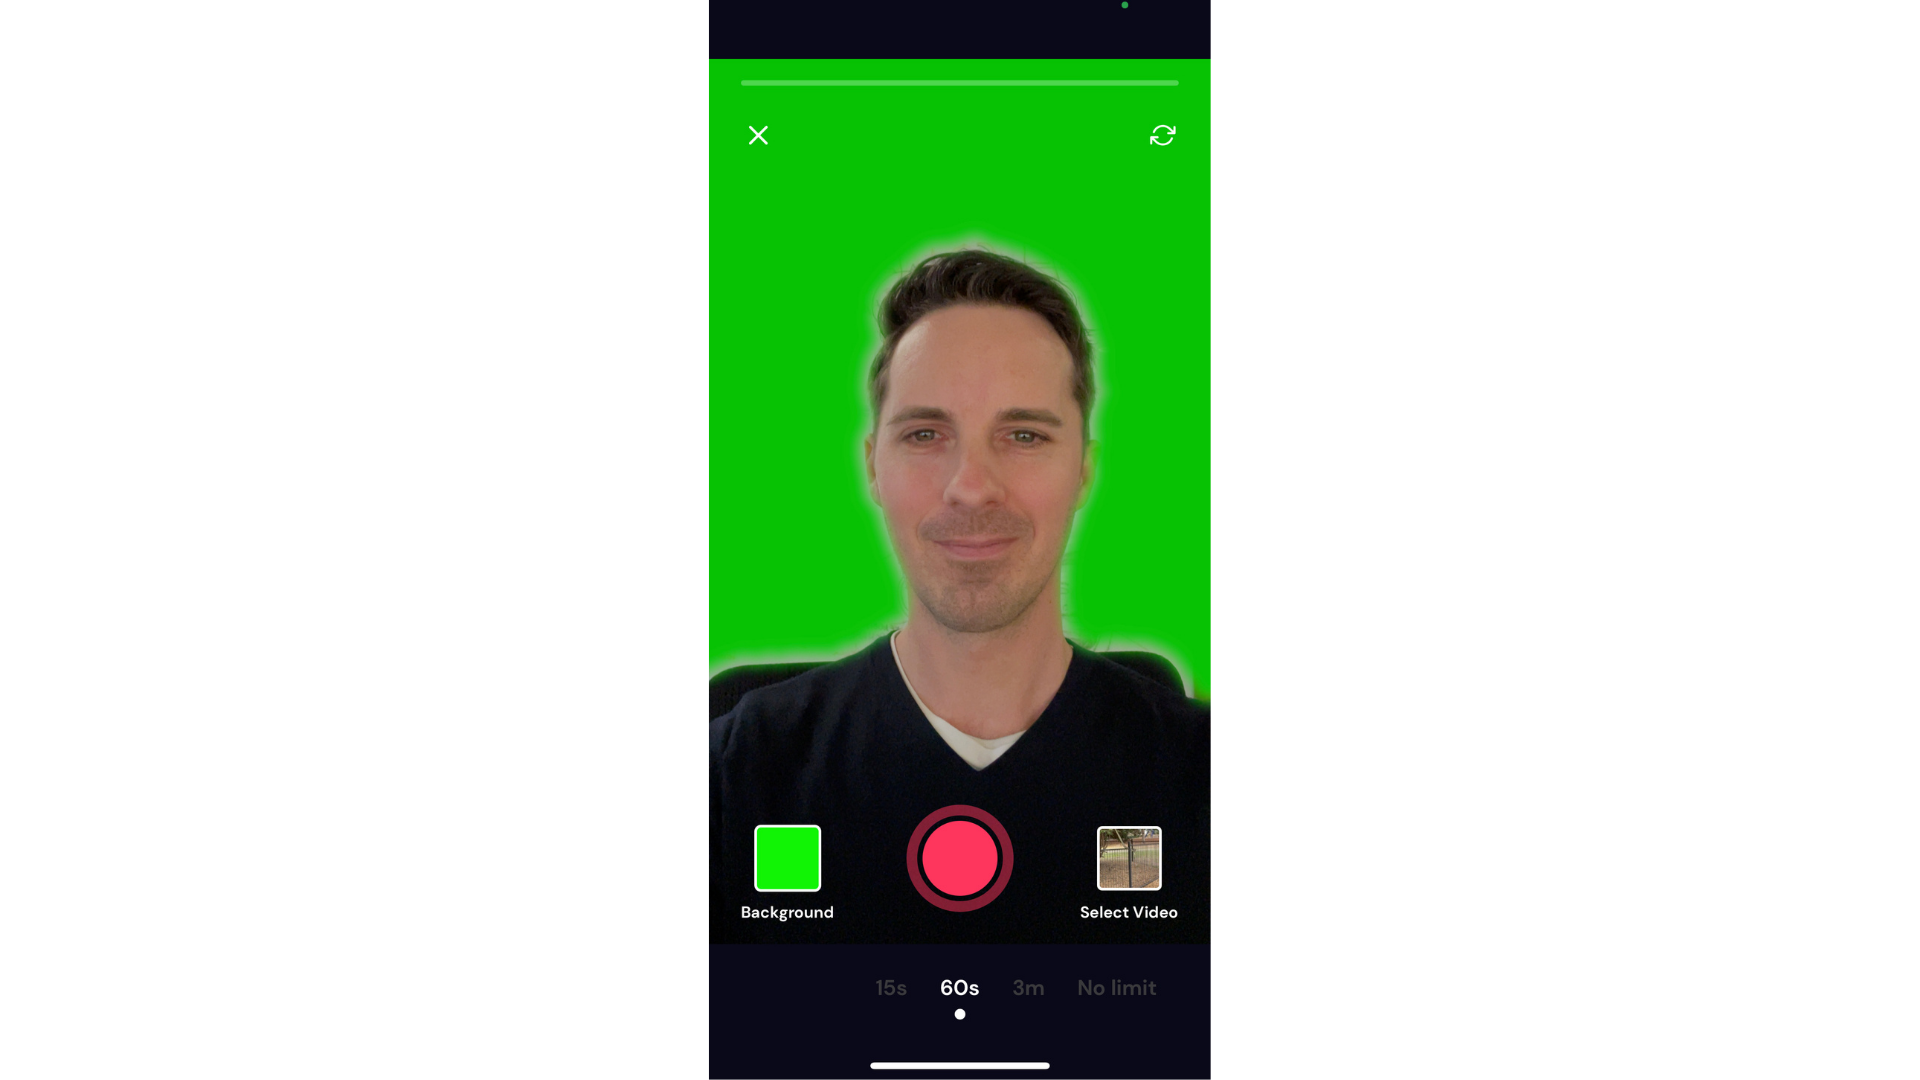 משתמש משתמש באפקט המסך הירוק באפליקציית Cliphcamp iOS